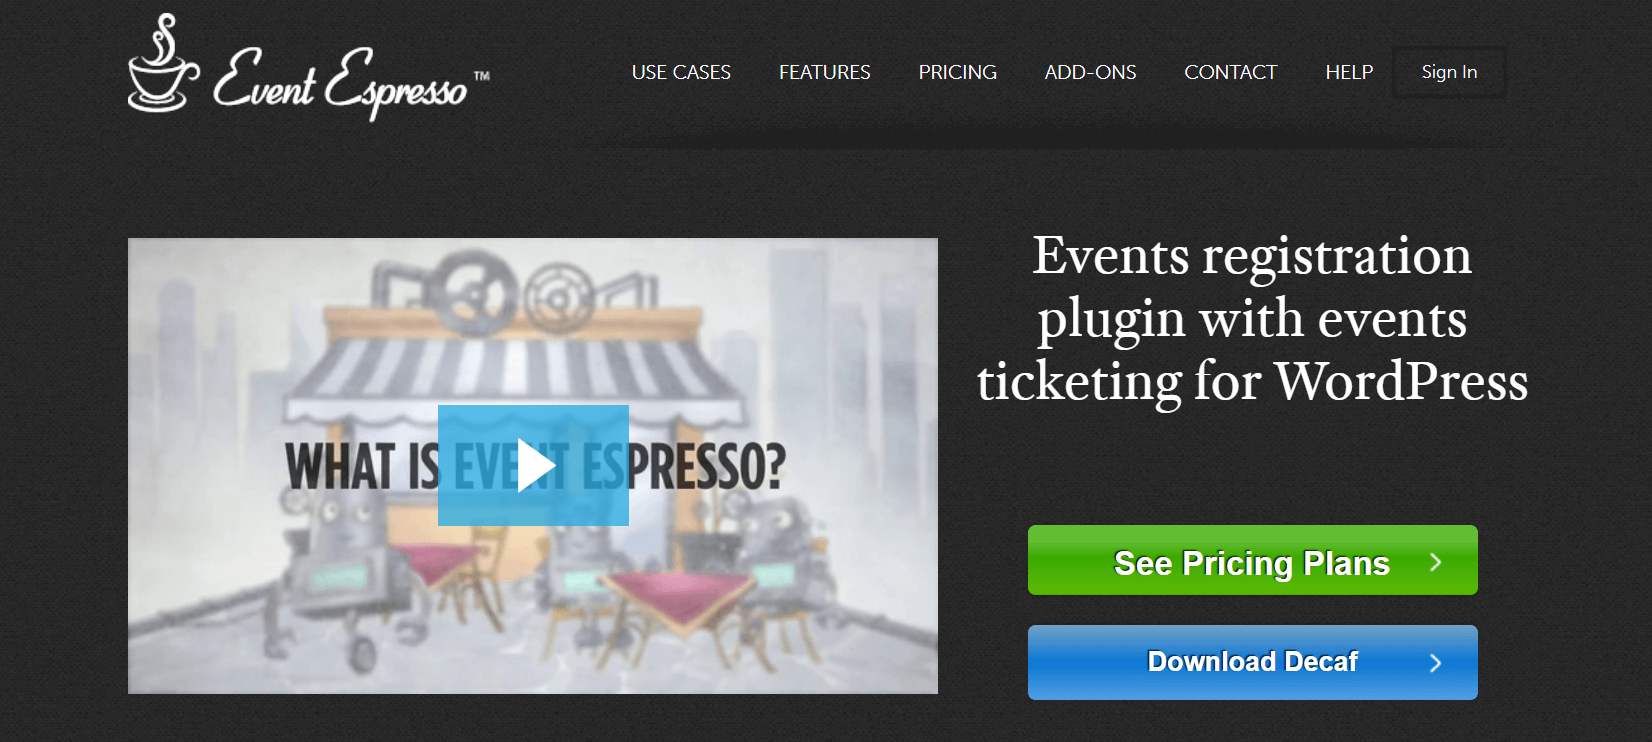 event-espresso-website.png